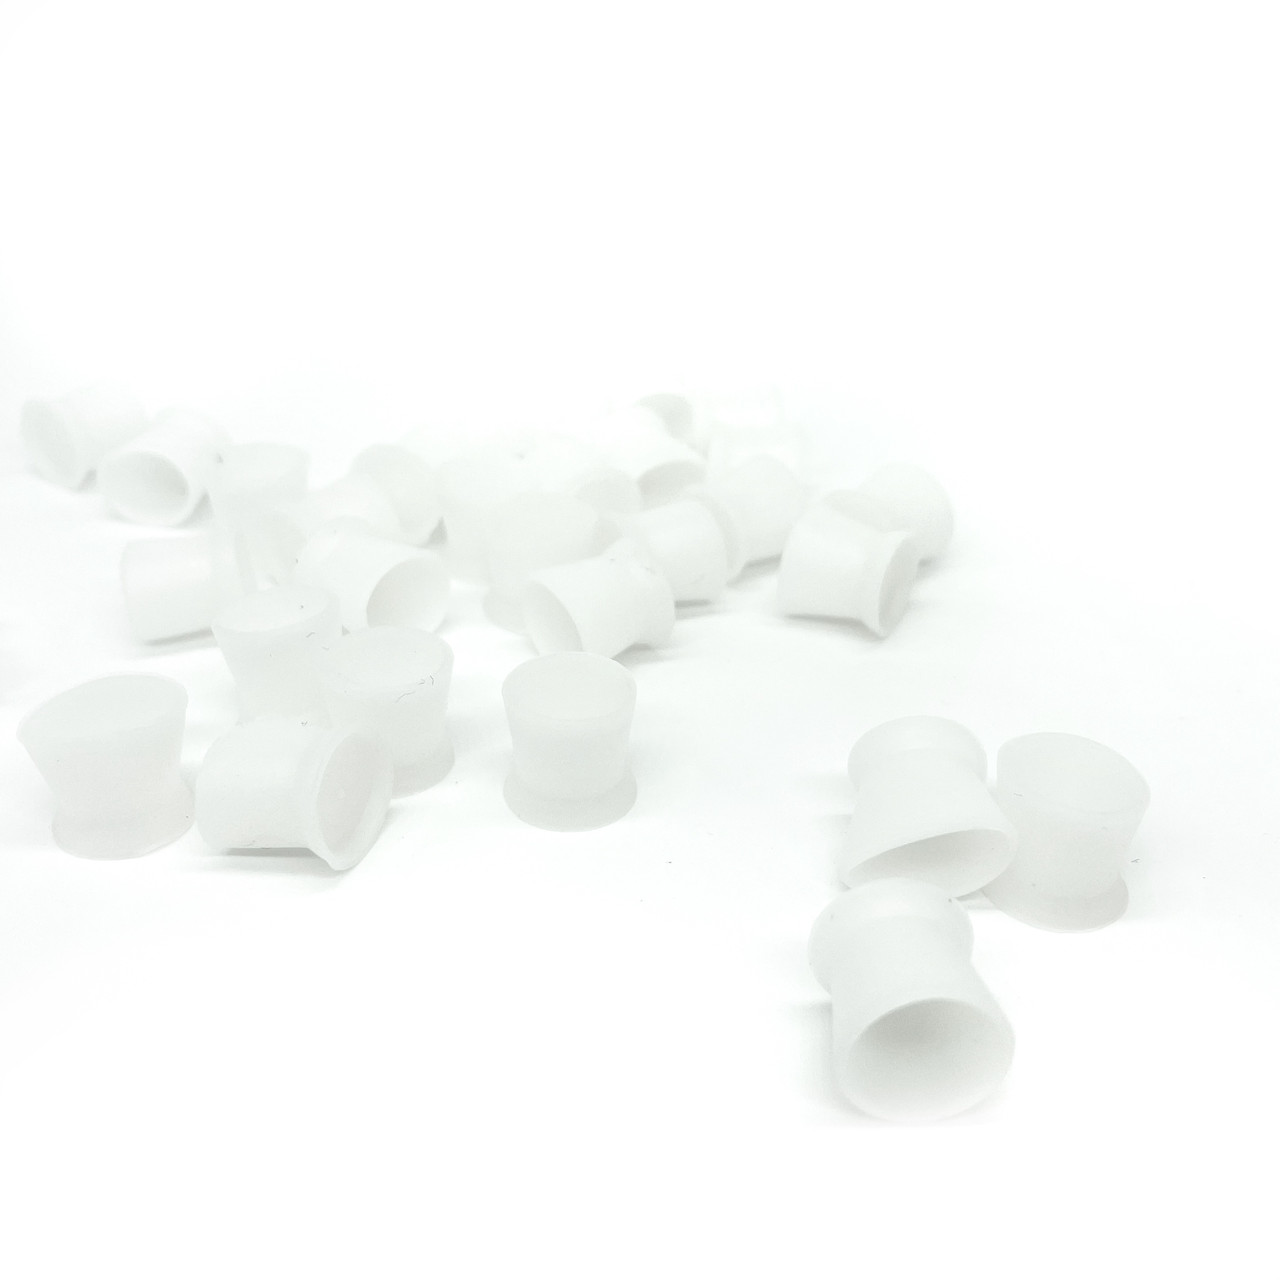 Колпачки (капси) под пигмент силиконовые в тубе (300 шт/уп), белые